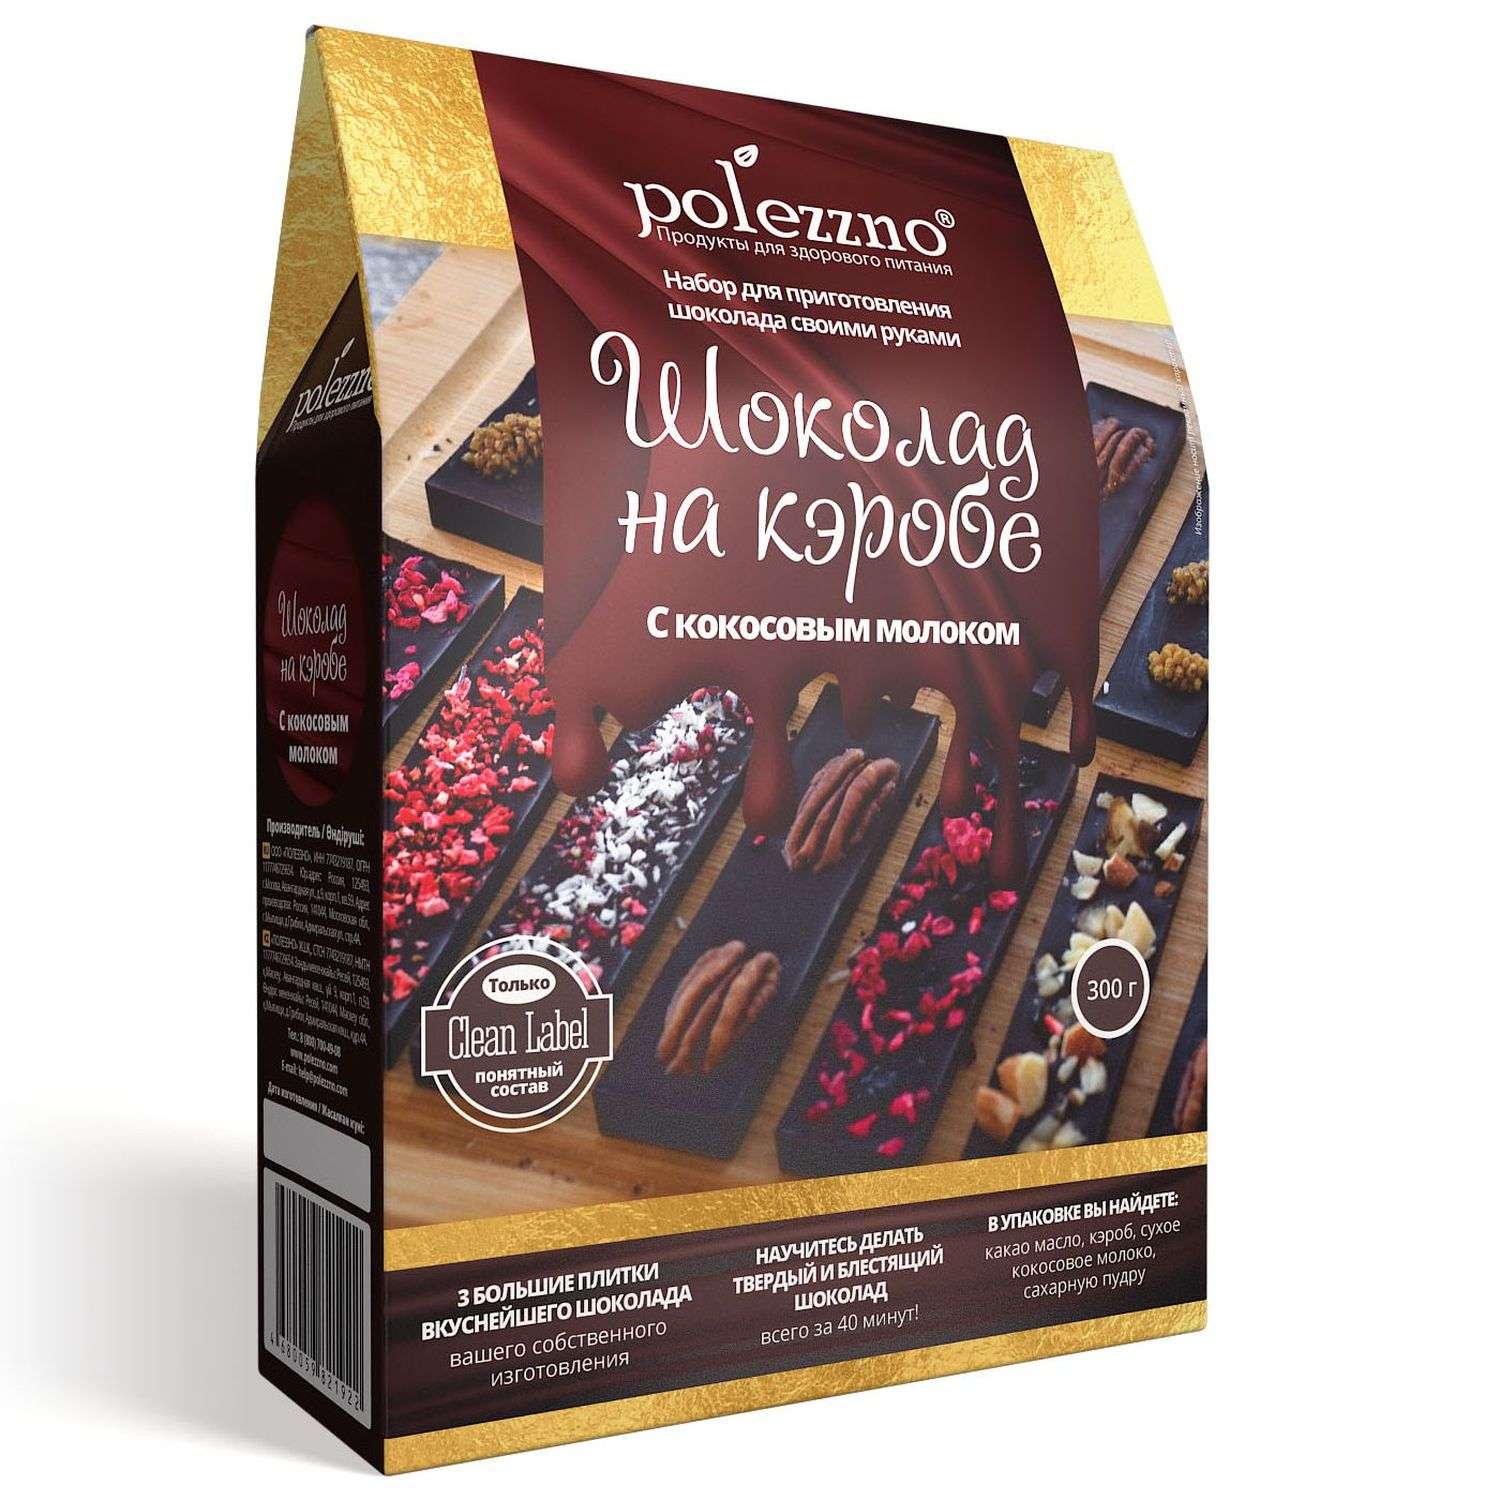 🔷 Купить тару и упаковку для шоколада в Москве с доставкой – интернет-магазин ТараТам